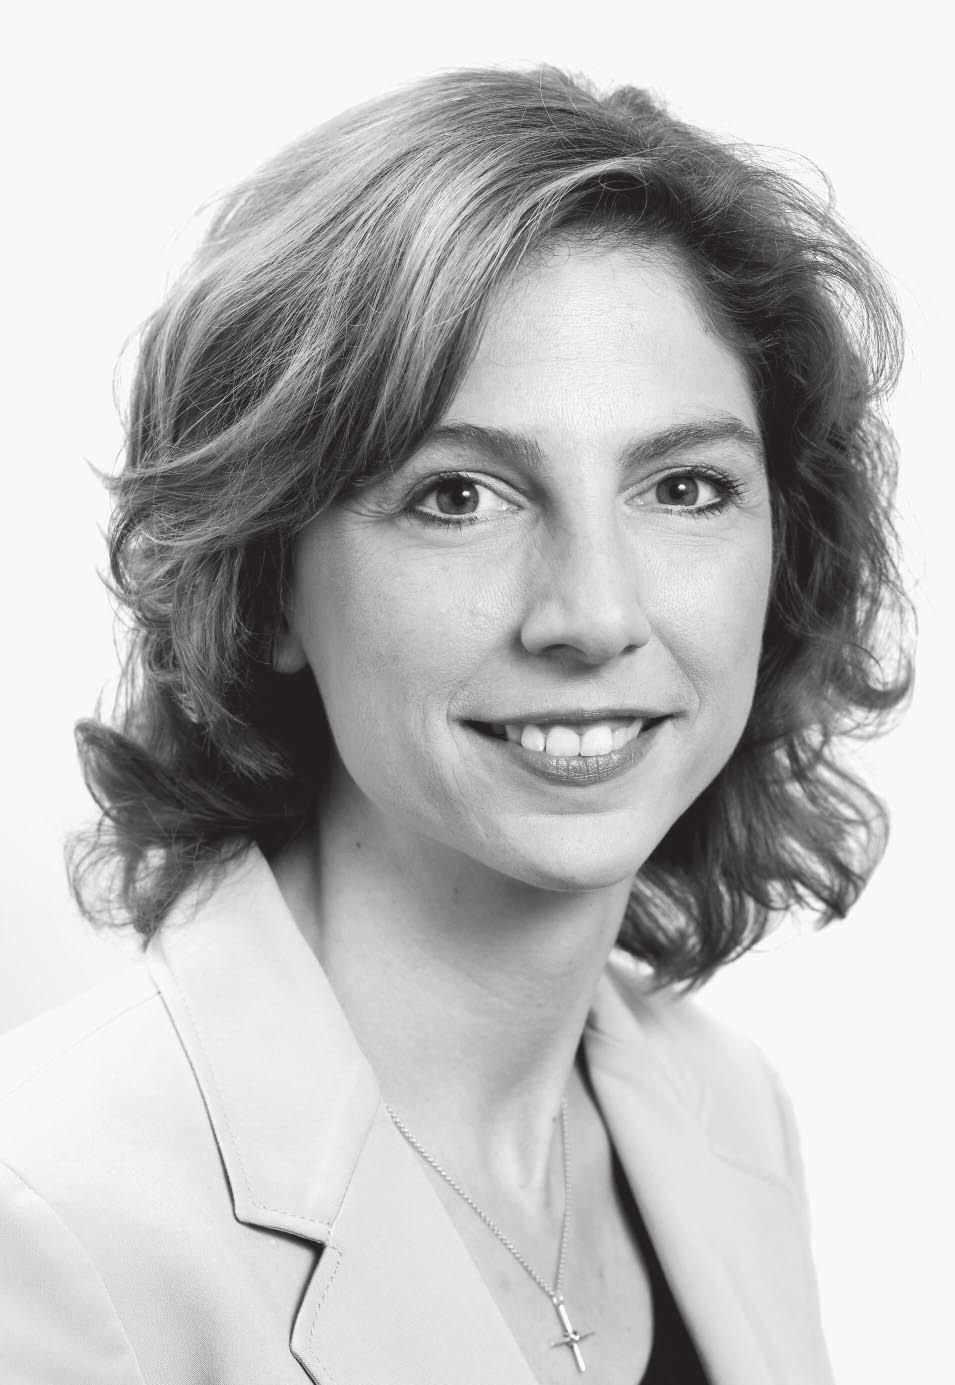 Die Autorin: Sabine Bätzing-Lichtenthäler ist SPD-Politikerin und Mitglied des Deutschen Bundestages. Dort ist sie Mitglied im Sport- und Finanzausschuss.